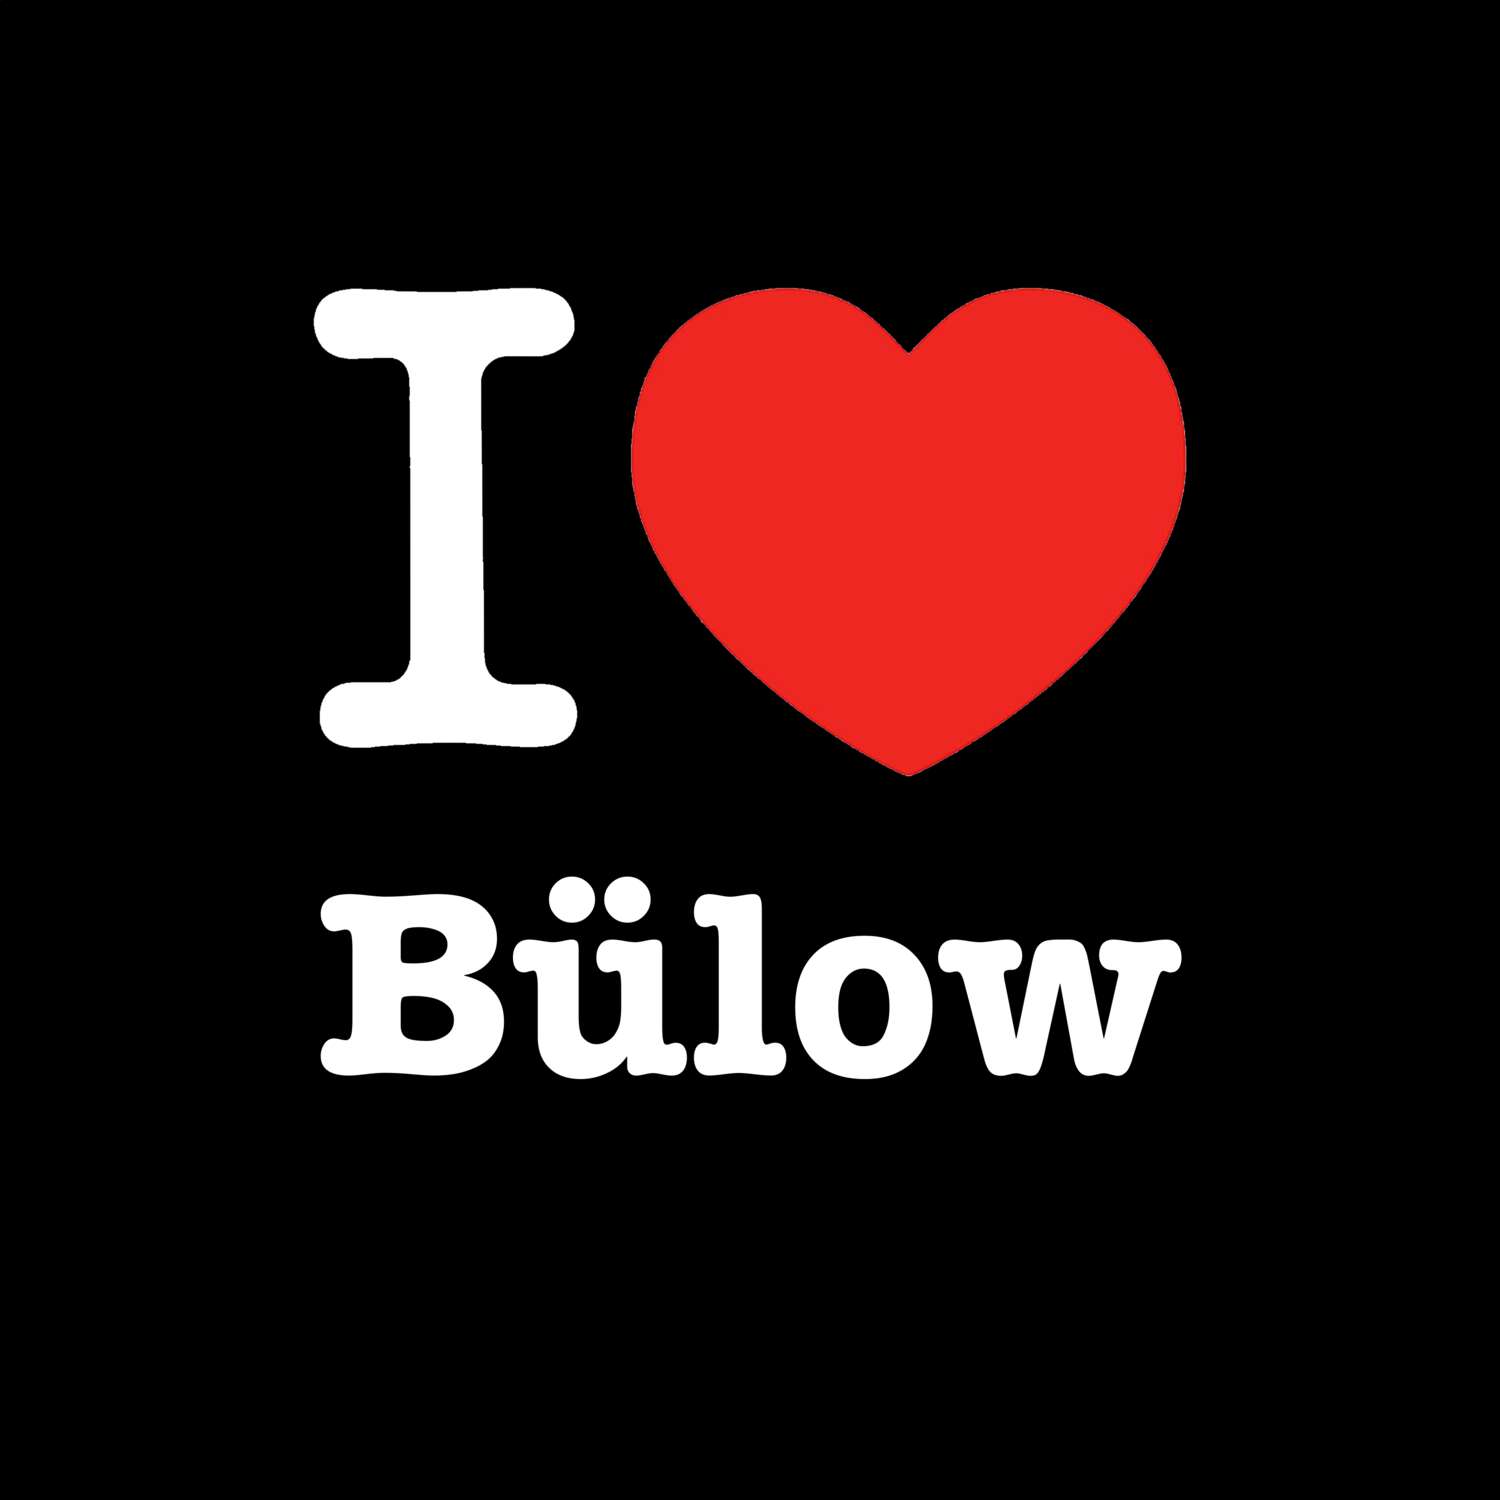 Bülow T-Shirt »I love«